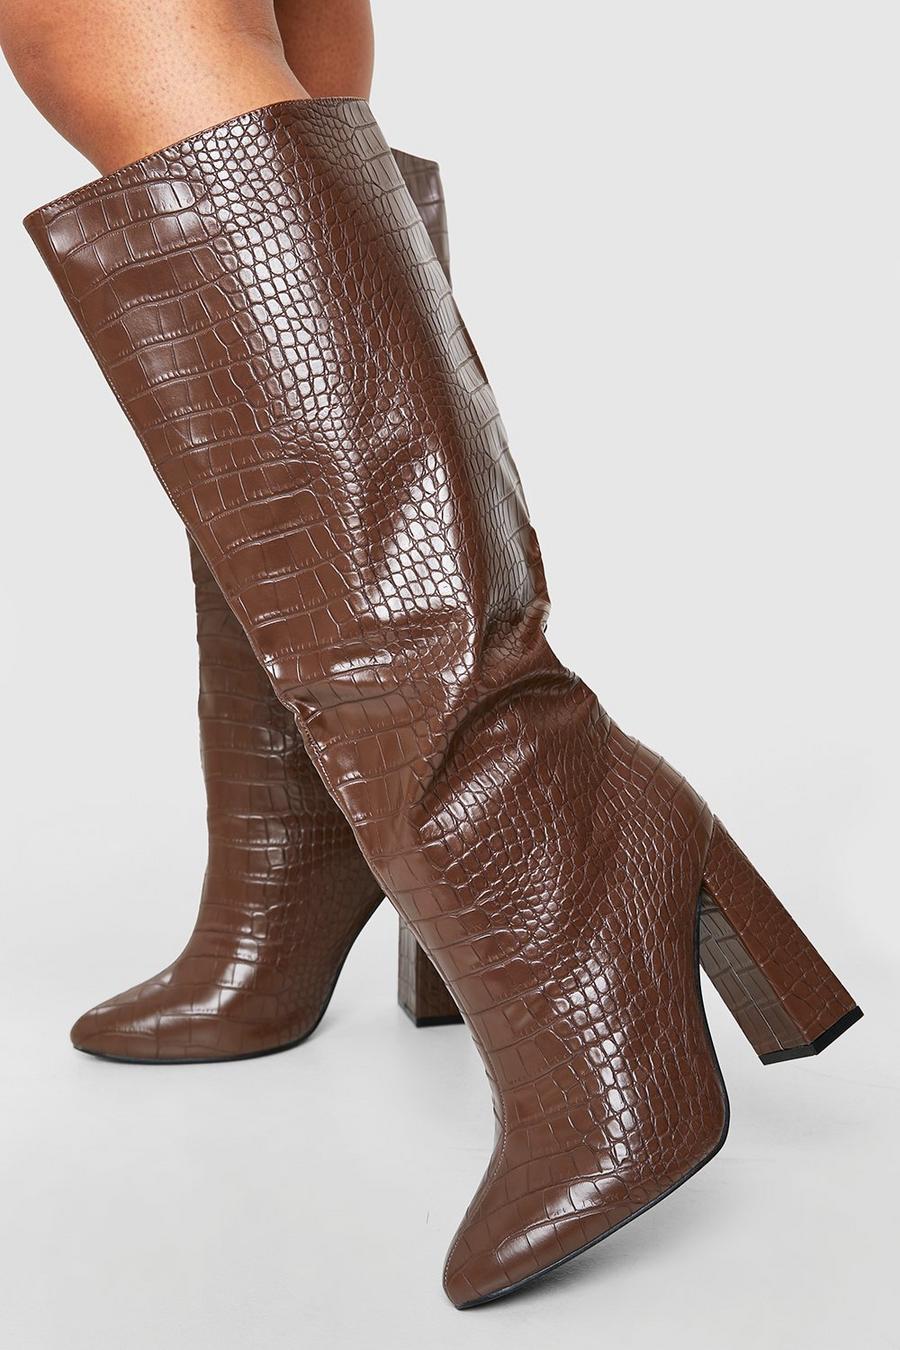 Stivali al ginocchio a calzata ampia effetto coccodrillo con tacco a blocco, Chocolate marrone